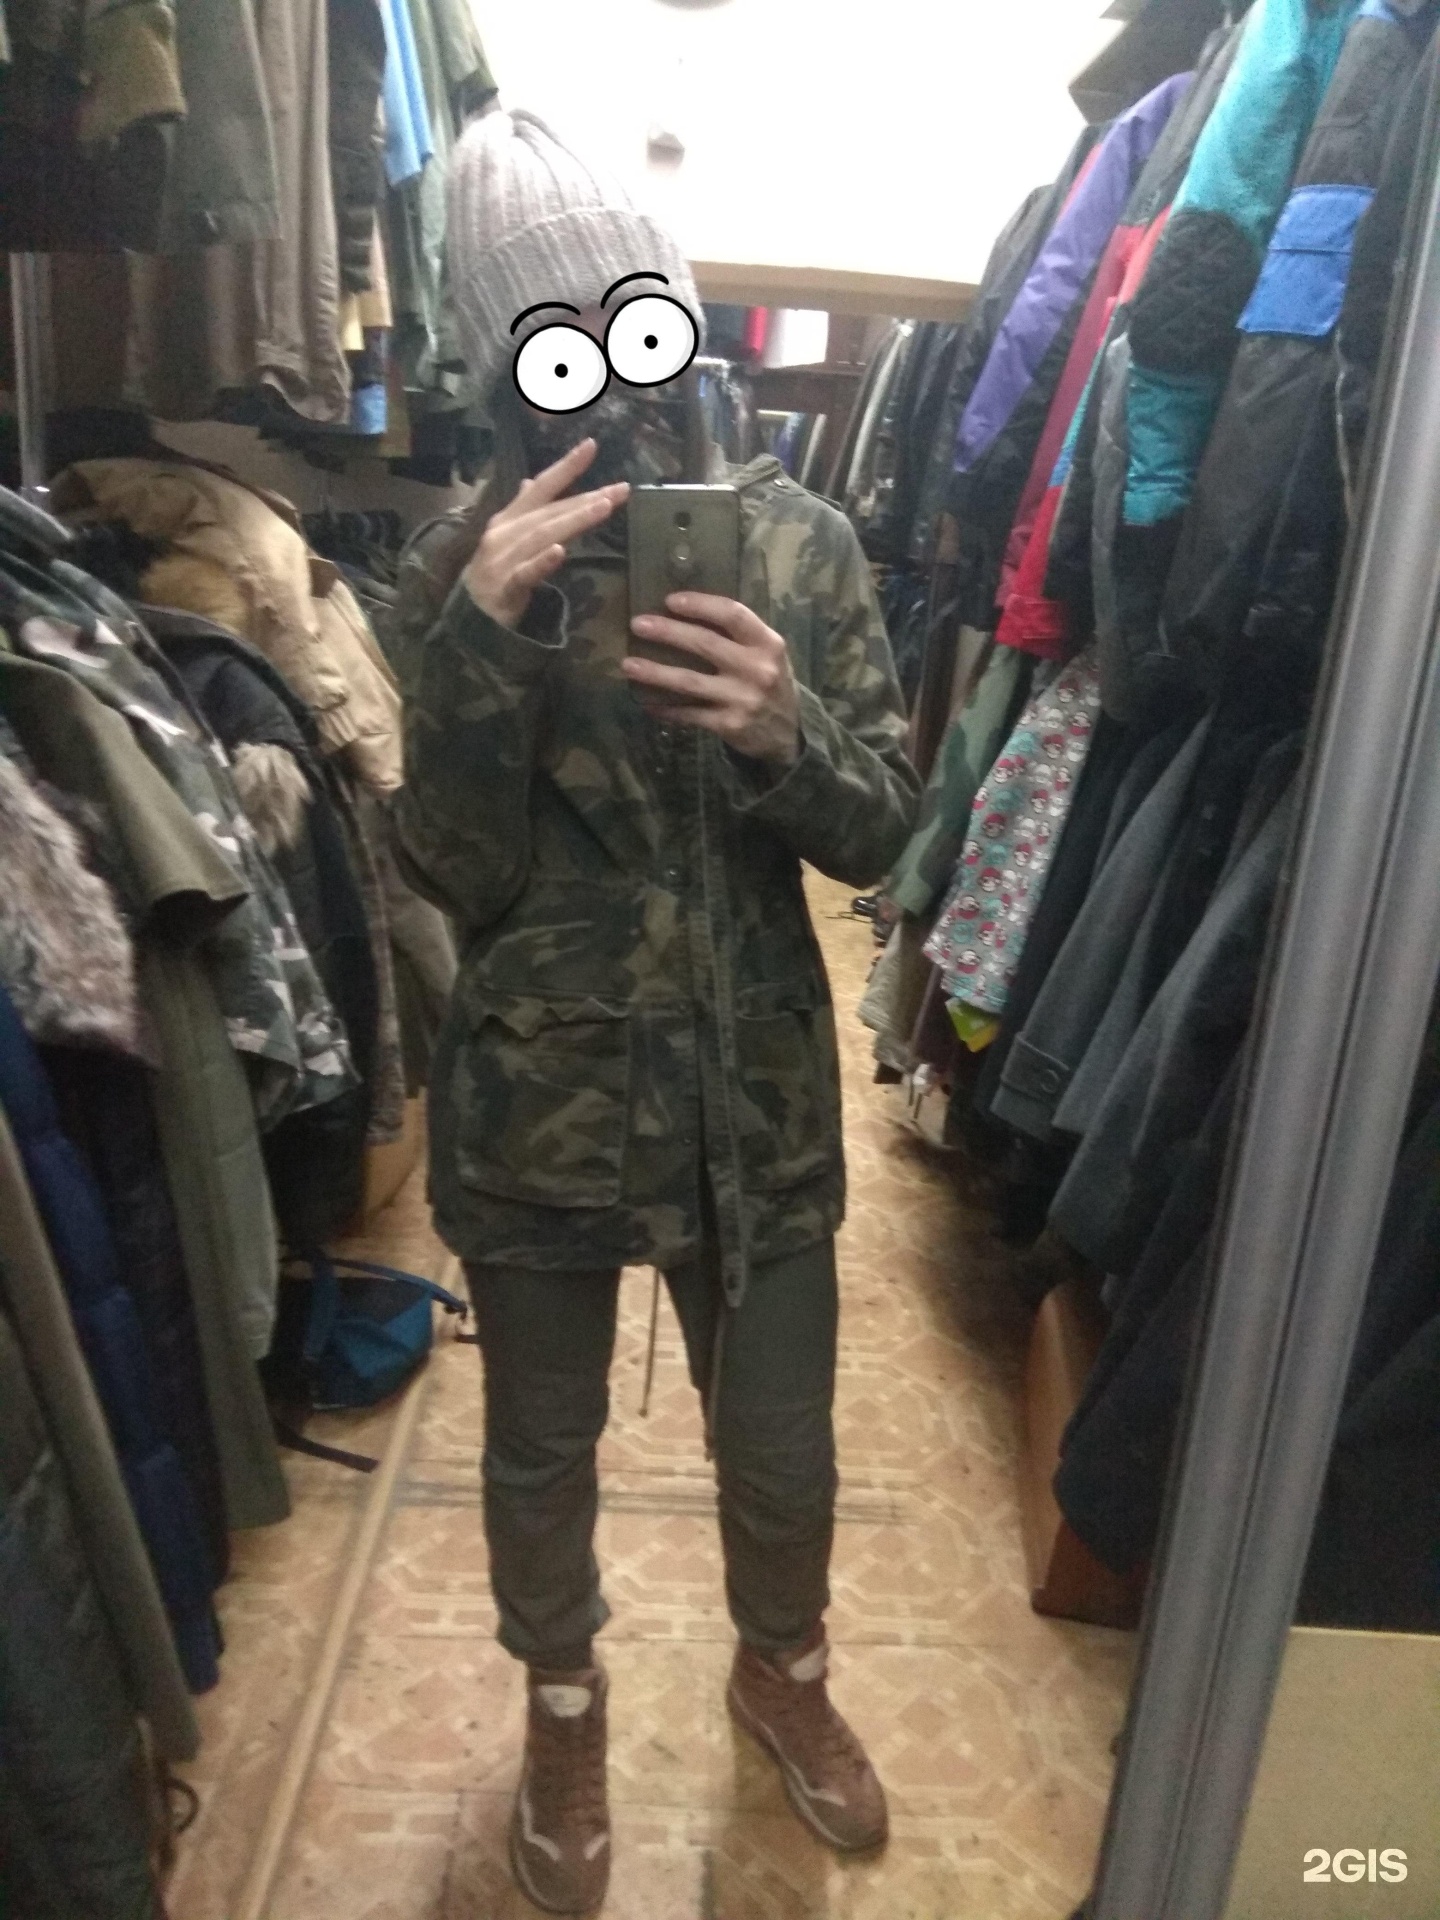 Магазин Одежды Милитари В Екатеринбурге